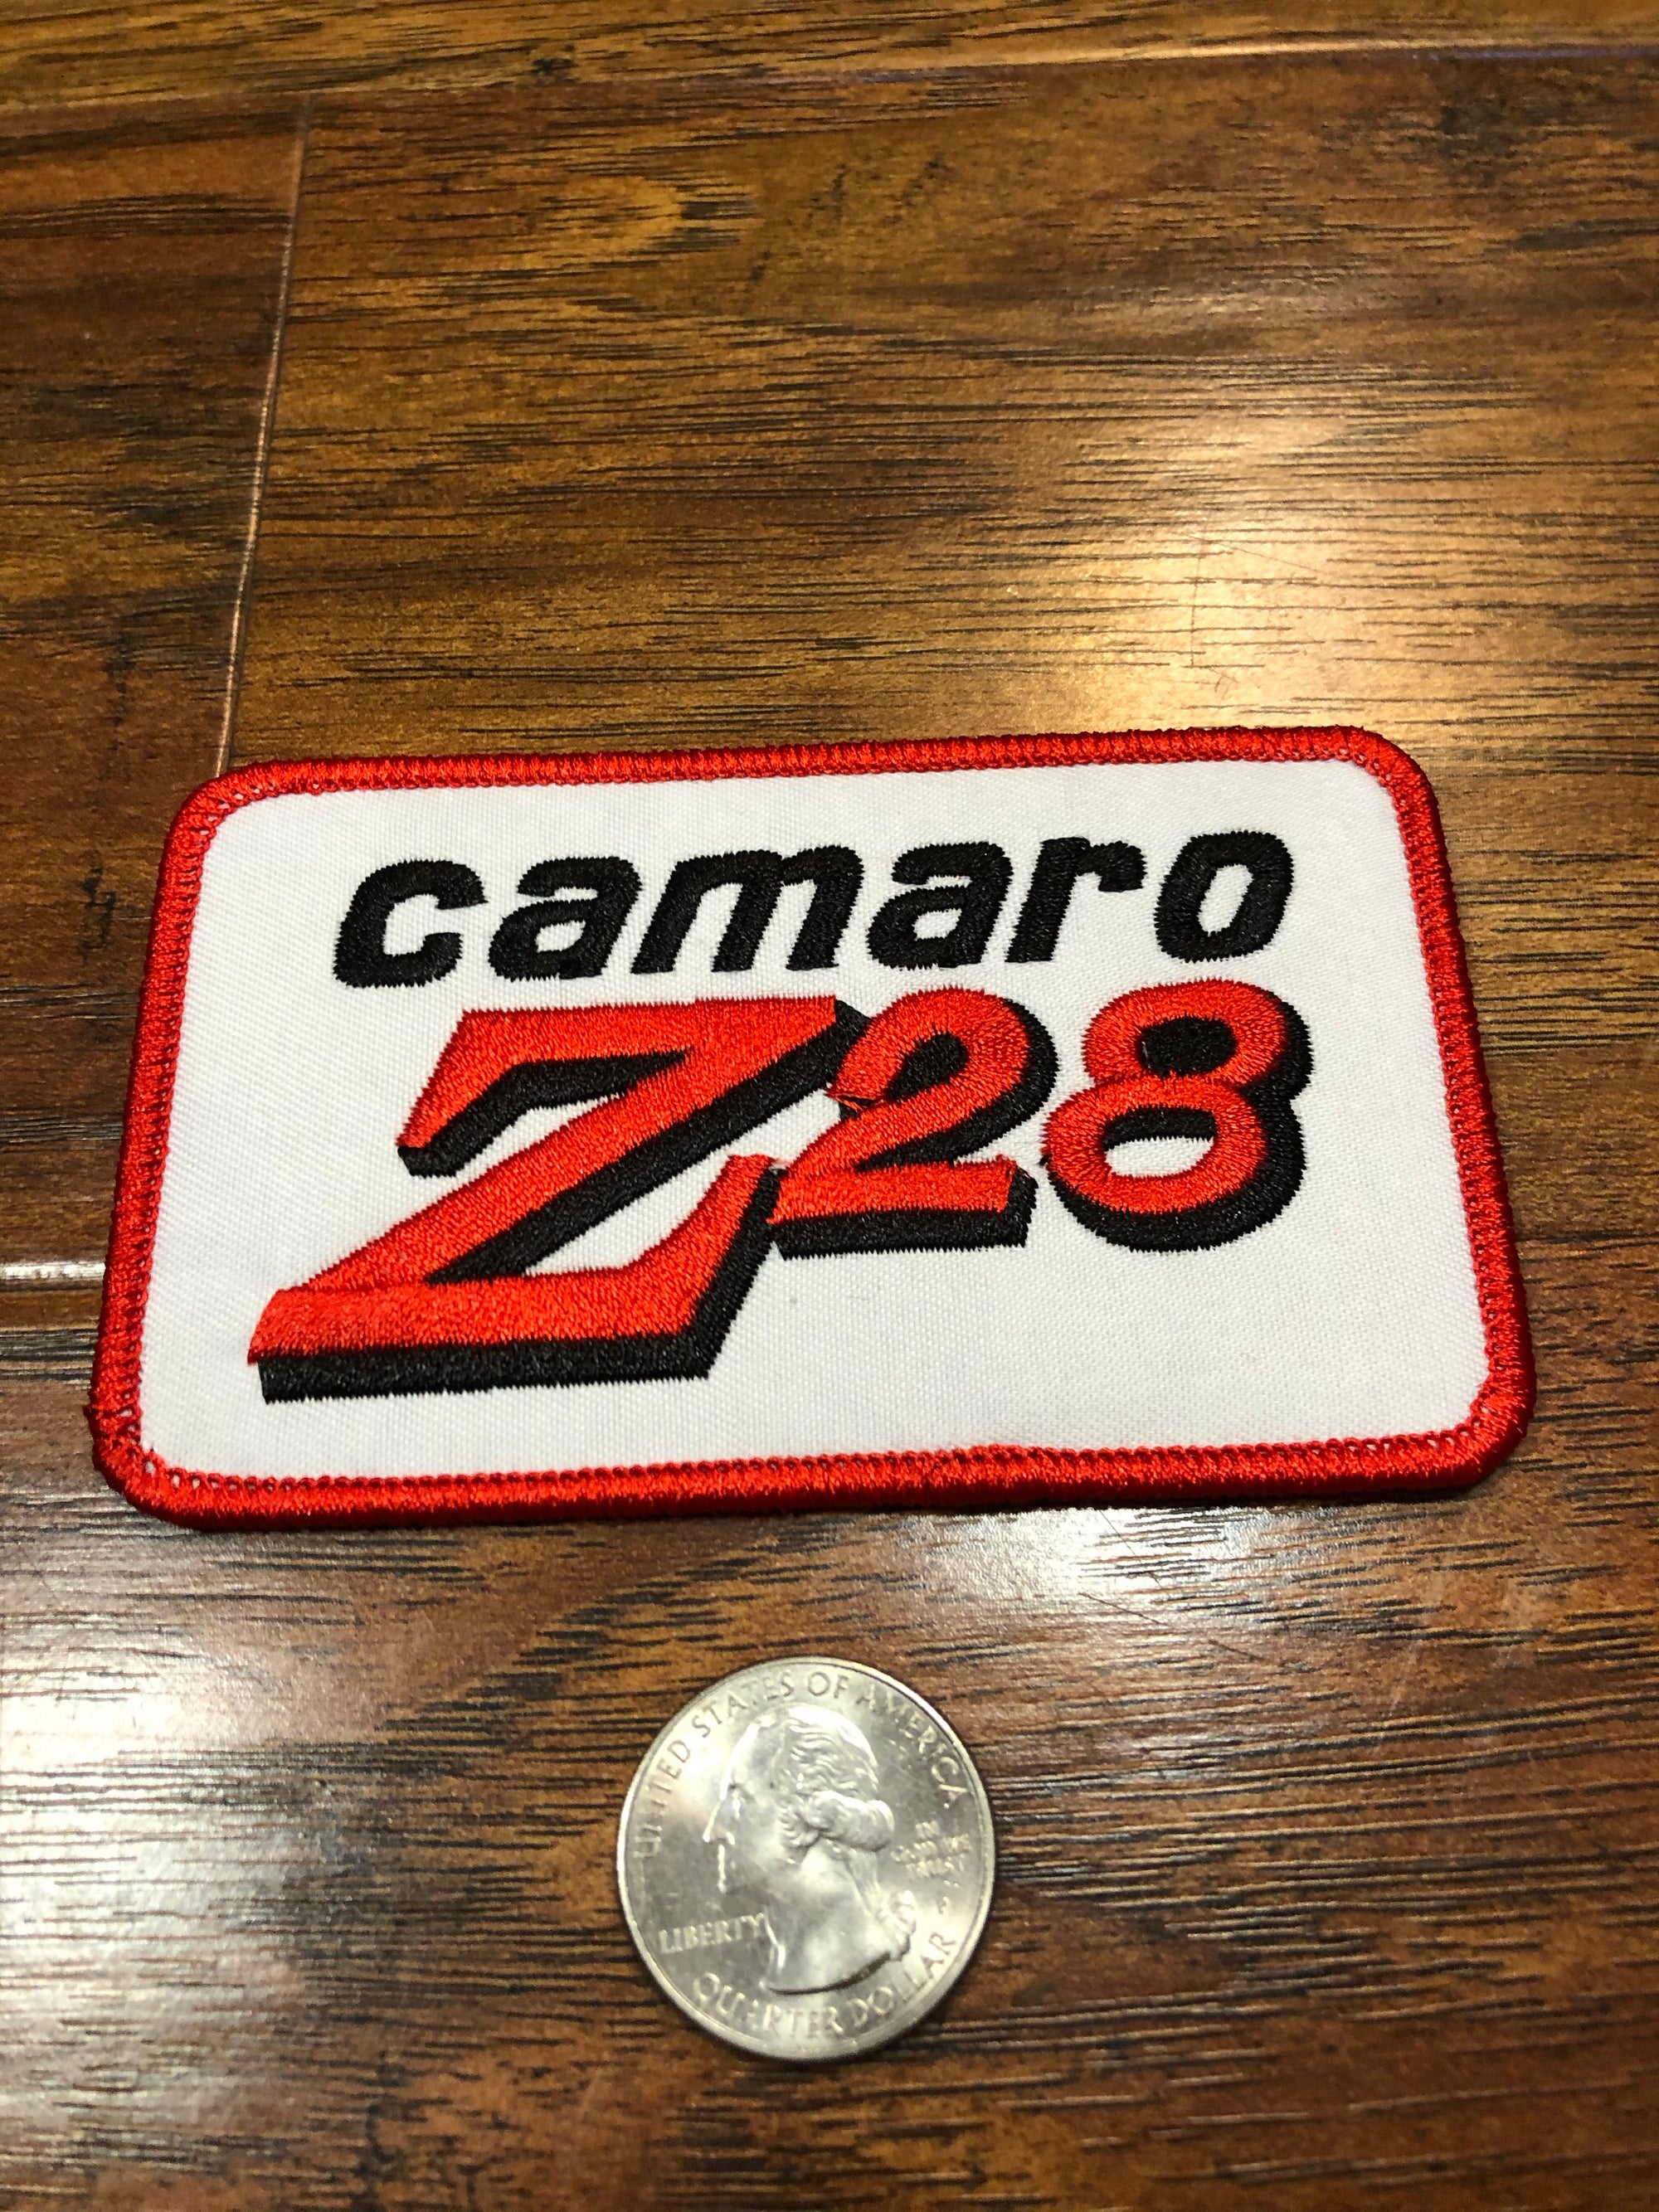 Camaro Z28